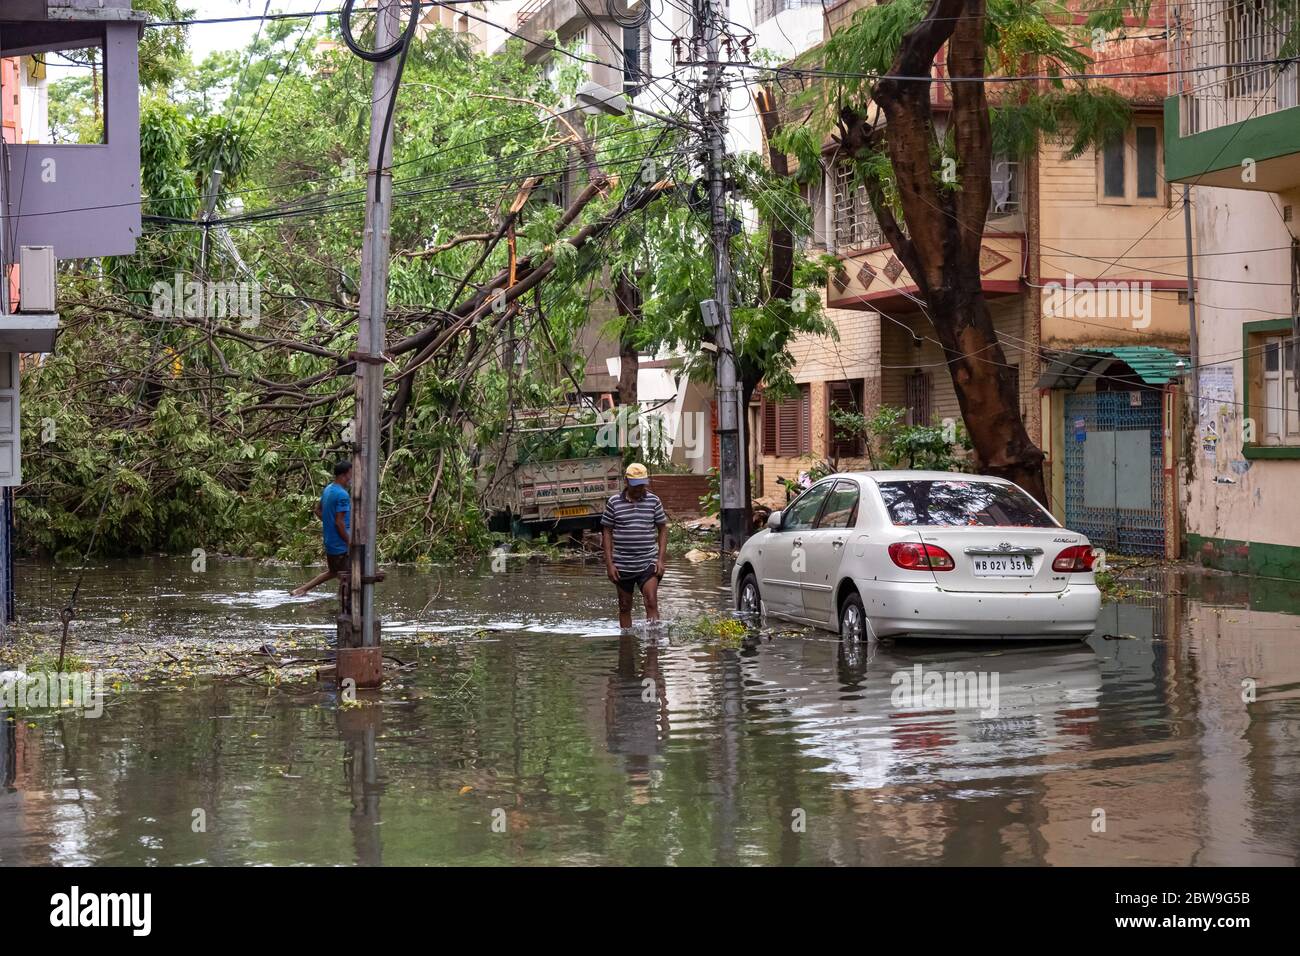 Strada urbana allagata con veicoli, pedoni e alberi sradicati dopo la grave tempesta ciclonica 'Amphan' sciopero al Bengala Occidentale, India Foto Stock